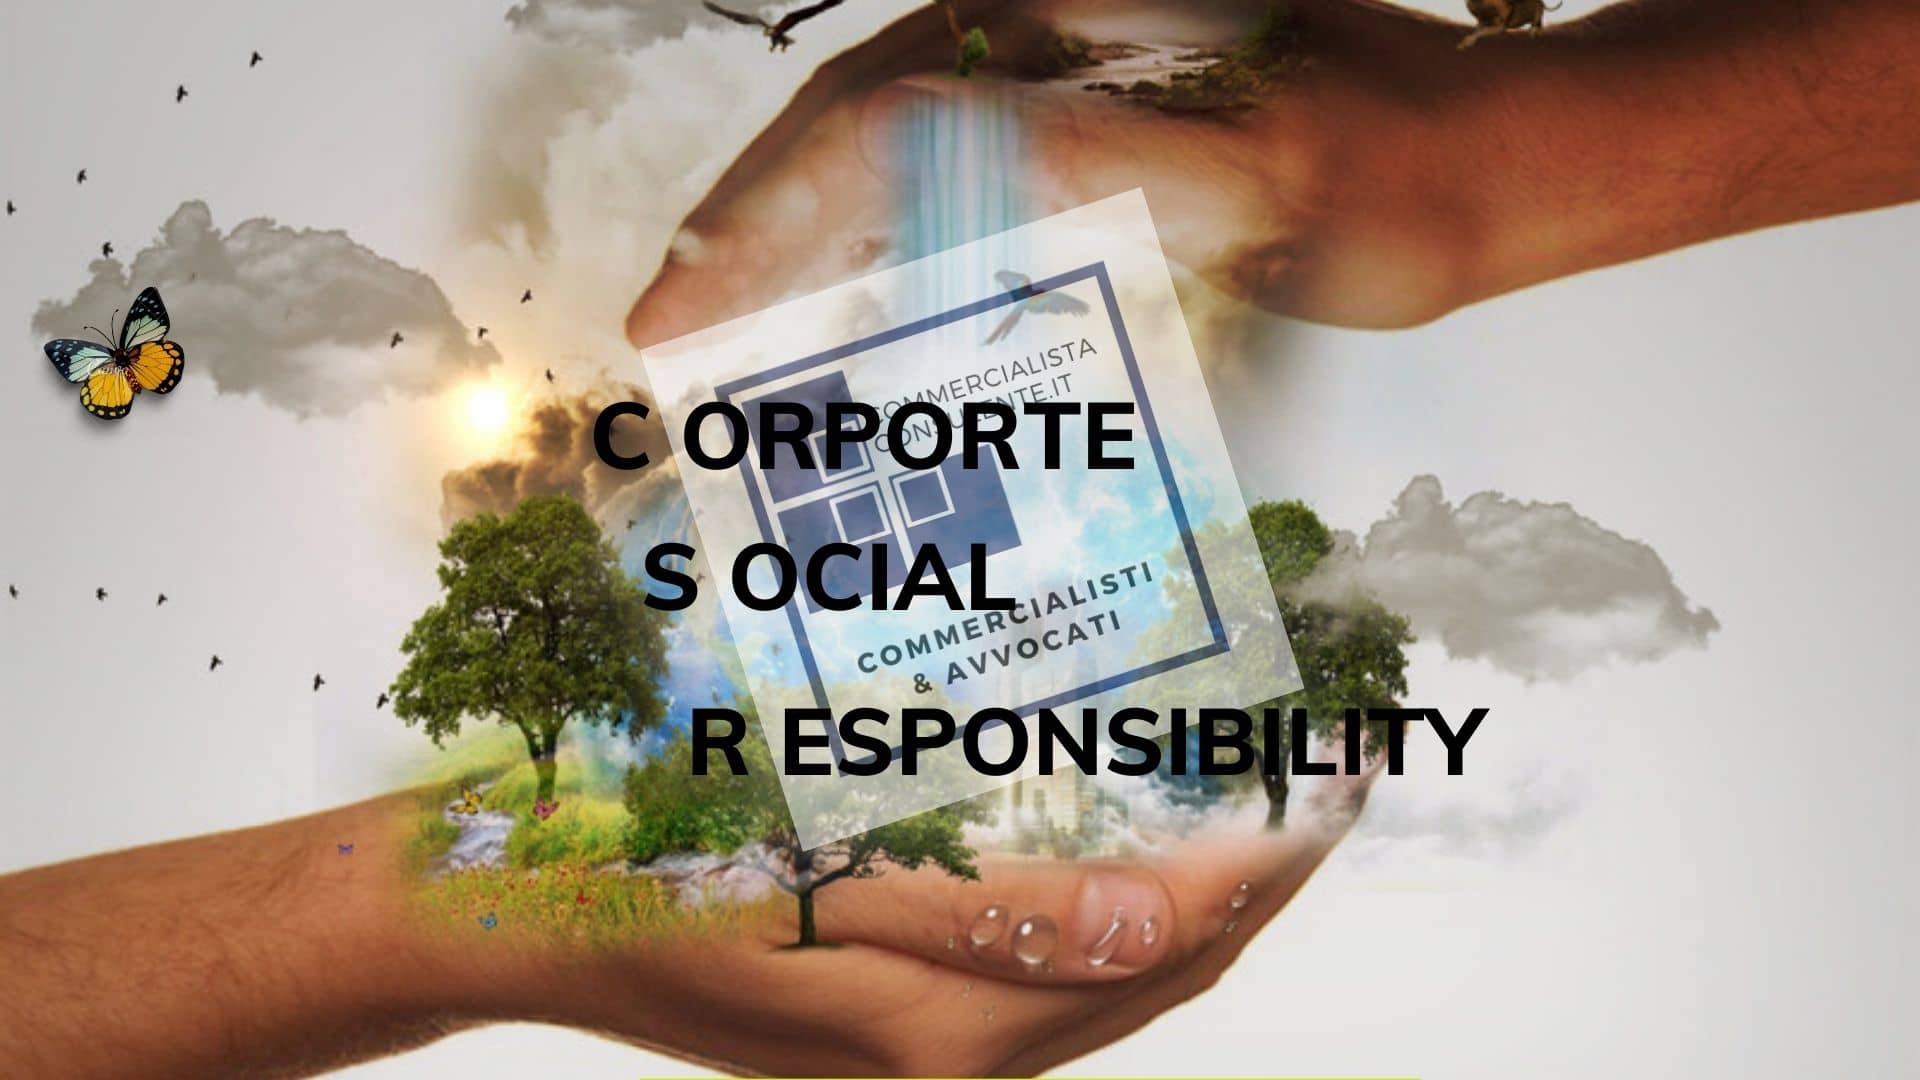 CORPORATE SOCIAL RESPONSIBILITY COS'E'